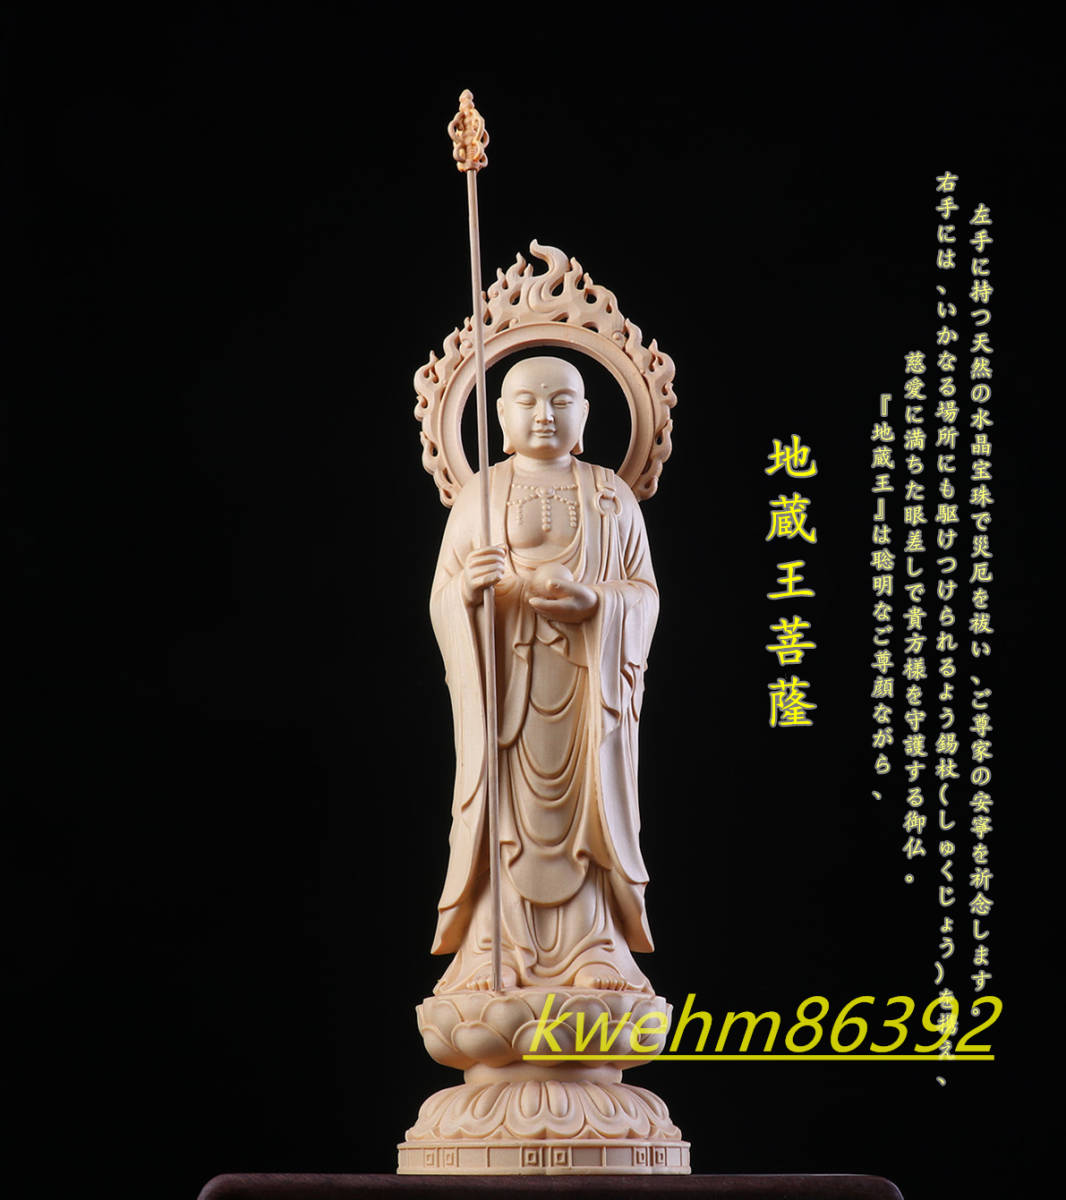 地蔵菩薩像 仏像 檜木 置物 天然木 仏師で仕上げ品 精密彫刻 工芸品-